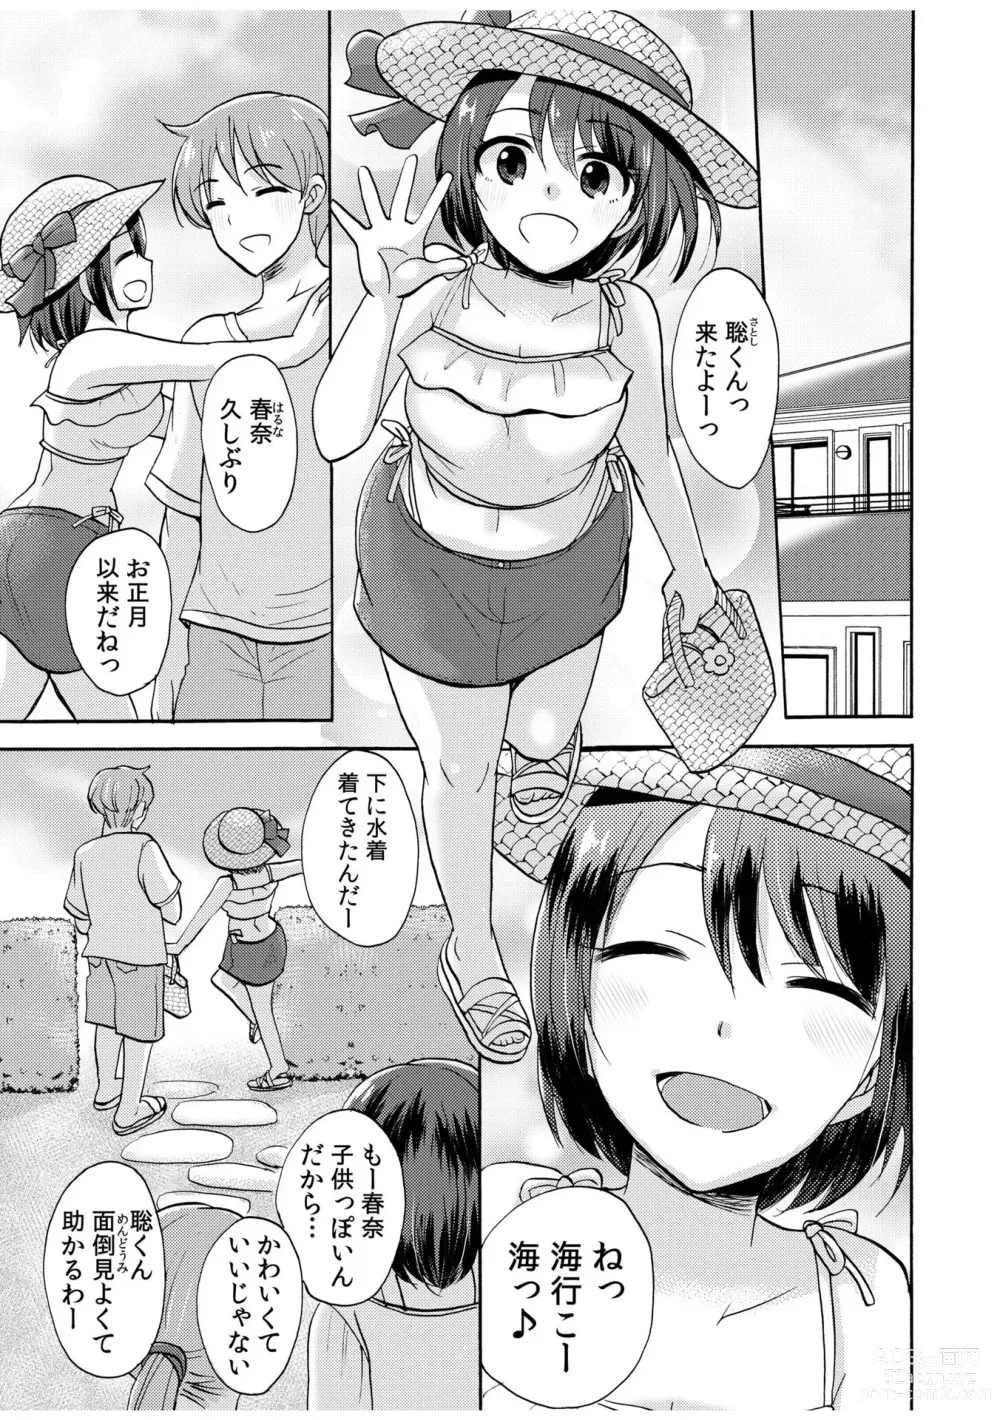 Page 3 of manga 「Zettai ni kimi o hanasanai」Aishi au 2-ri wa nando mo hageshiku…